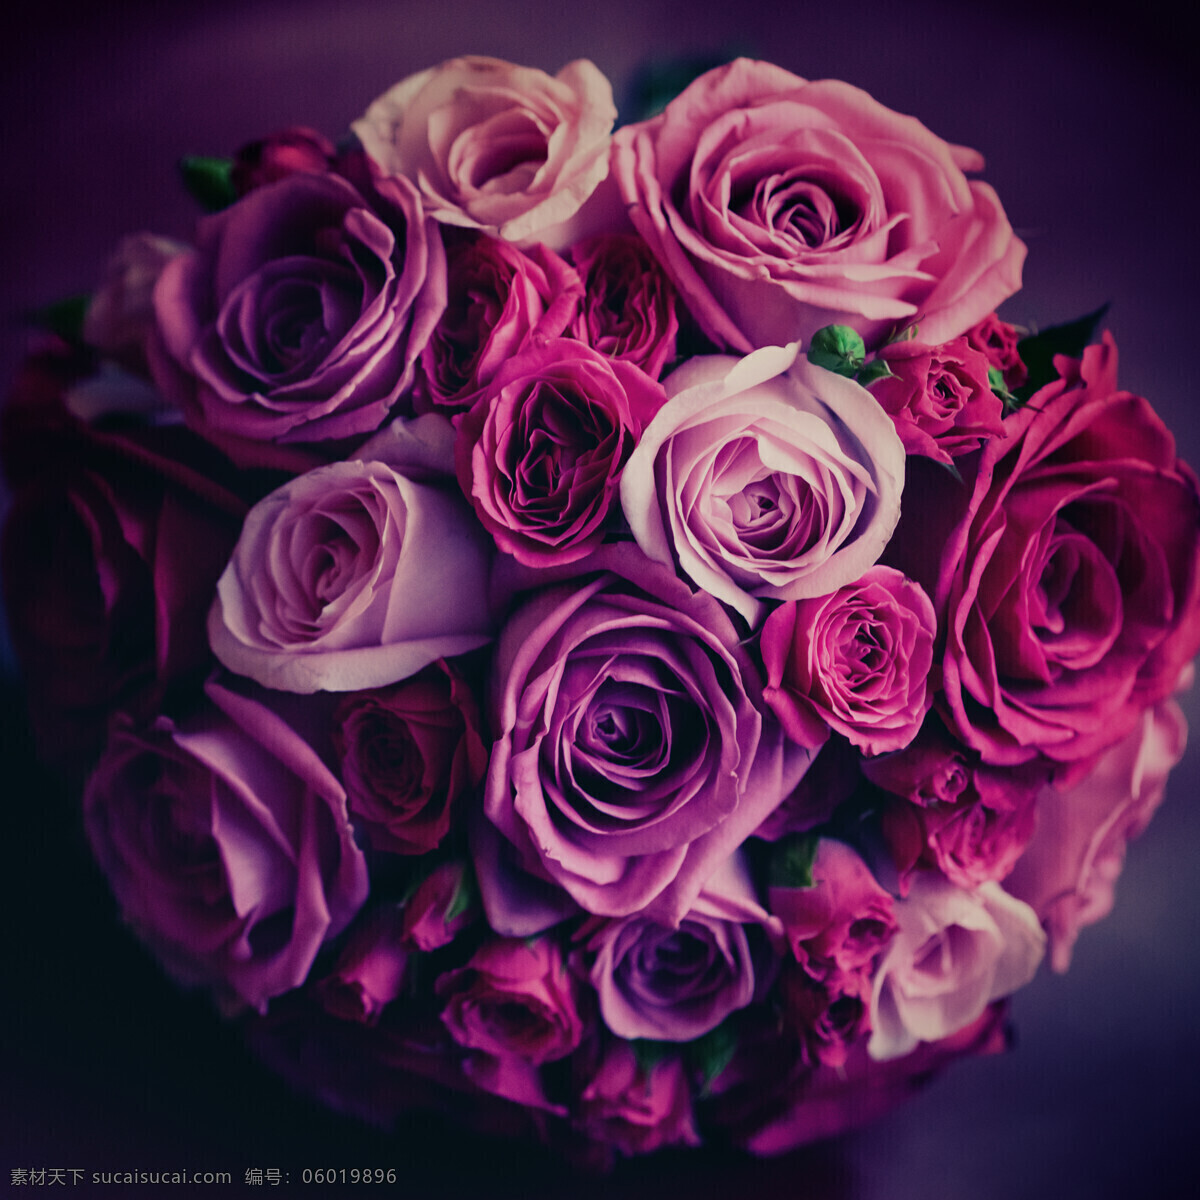 美丽 玫瑰花 摄影图片 花束 美丽鲜花 花卉 美丽花朵 婚礼花朵 婚礼鲜花 其他类别 生活百科 黑色